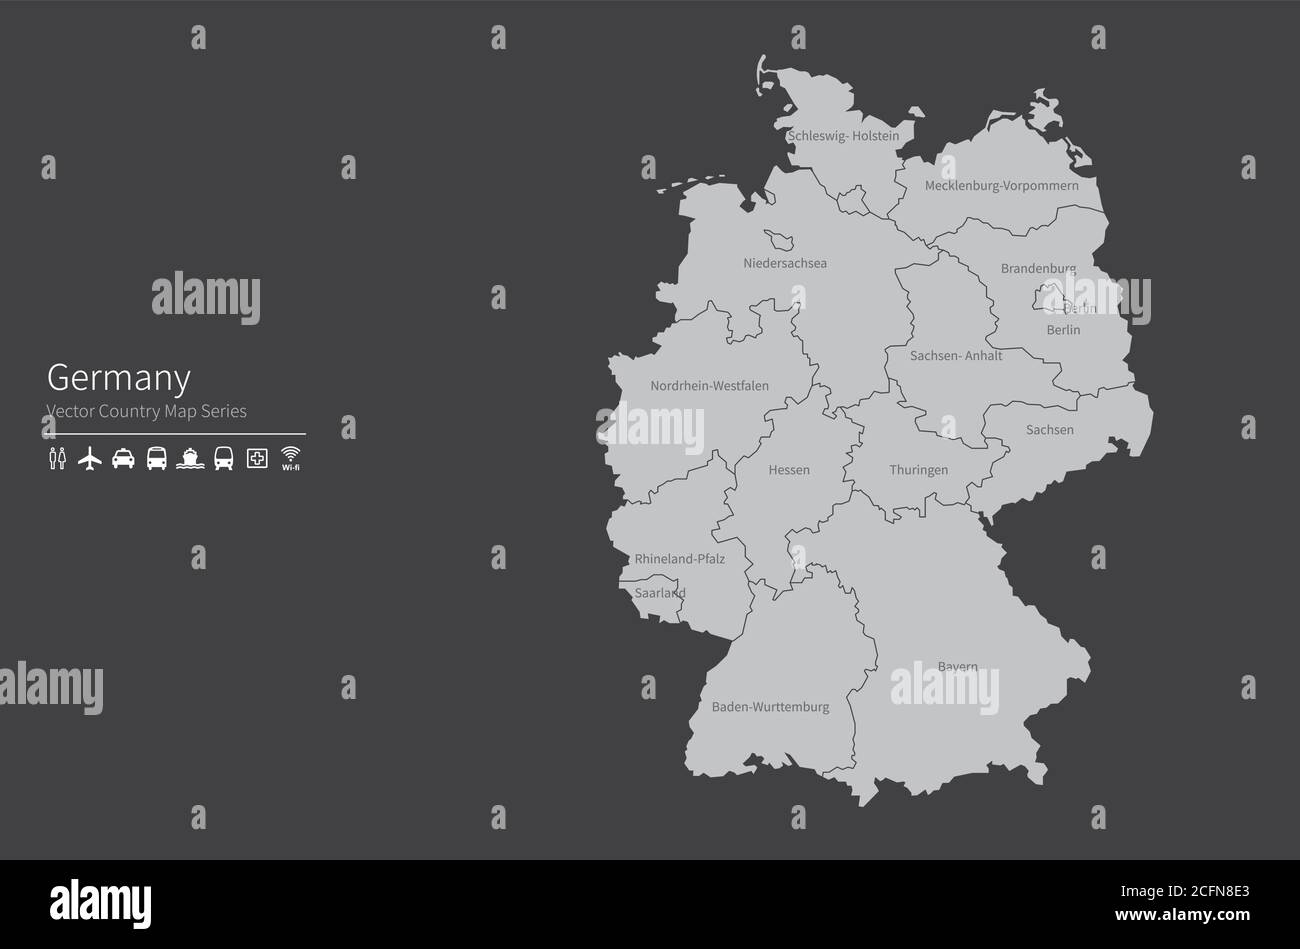 Deutschland-Karte. Nationale Karte der Welt. Grau gefärbte Länder Kartenserie. Stock Vektor